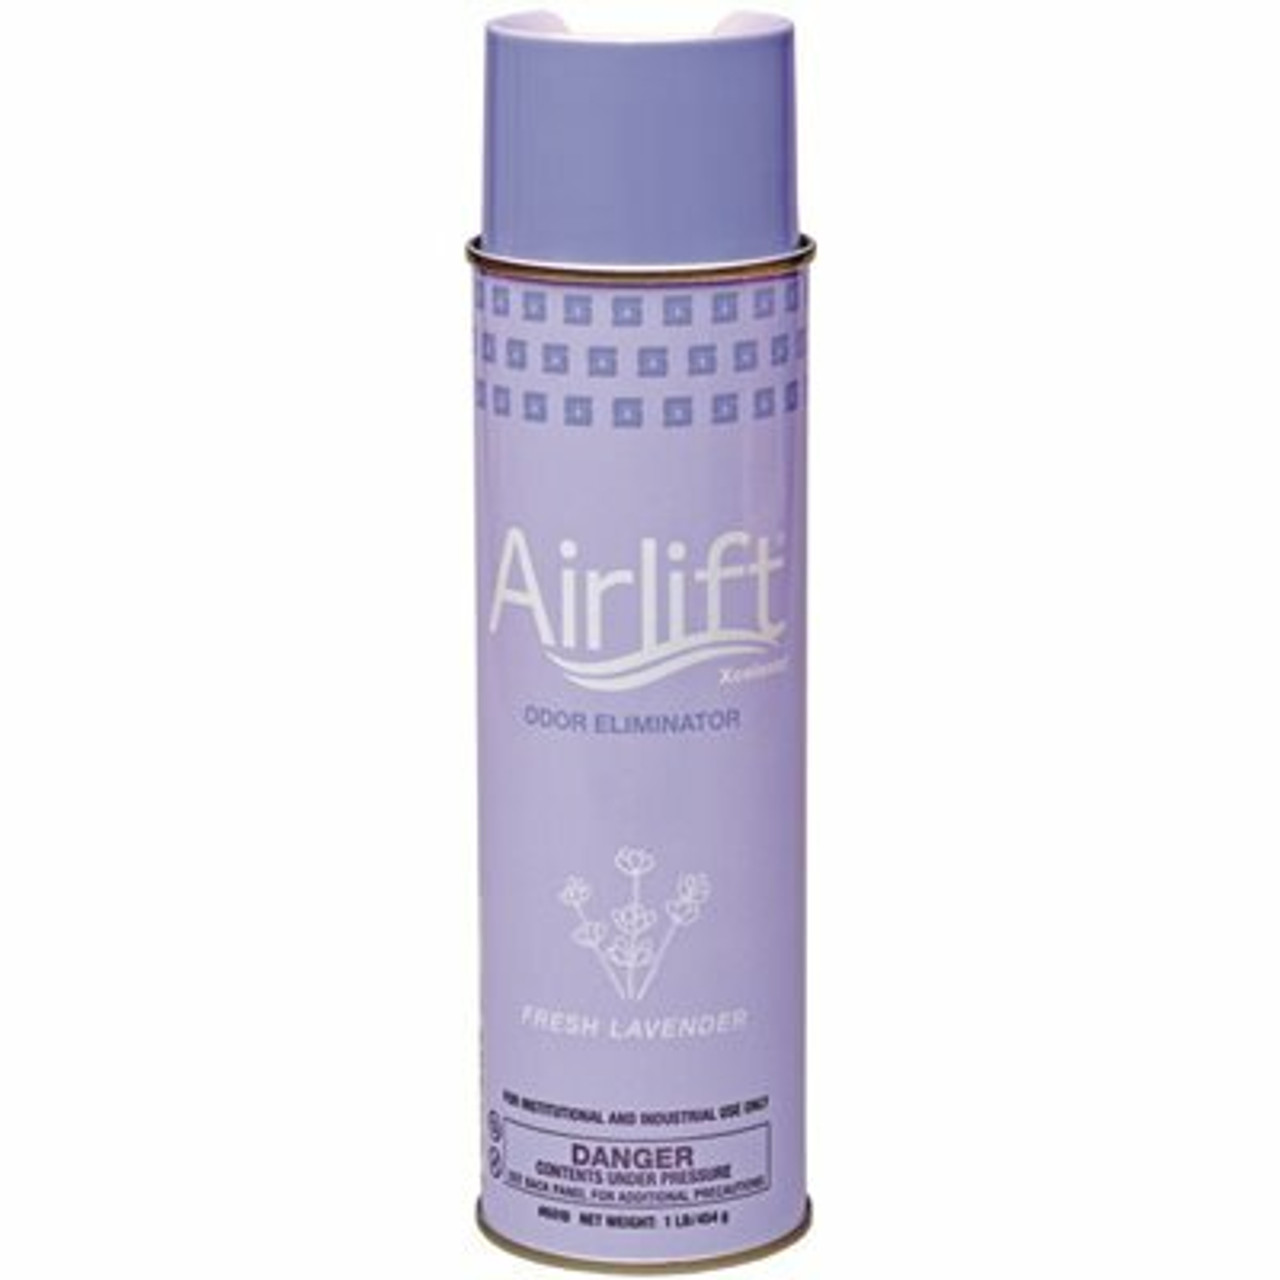 Airlift Xcelente Odor Eliminator 16Oz. Aerosol Can Fresh Lavender Scent Odor Eliminator (12 Per Pack)